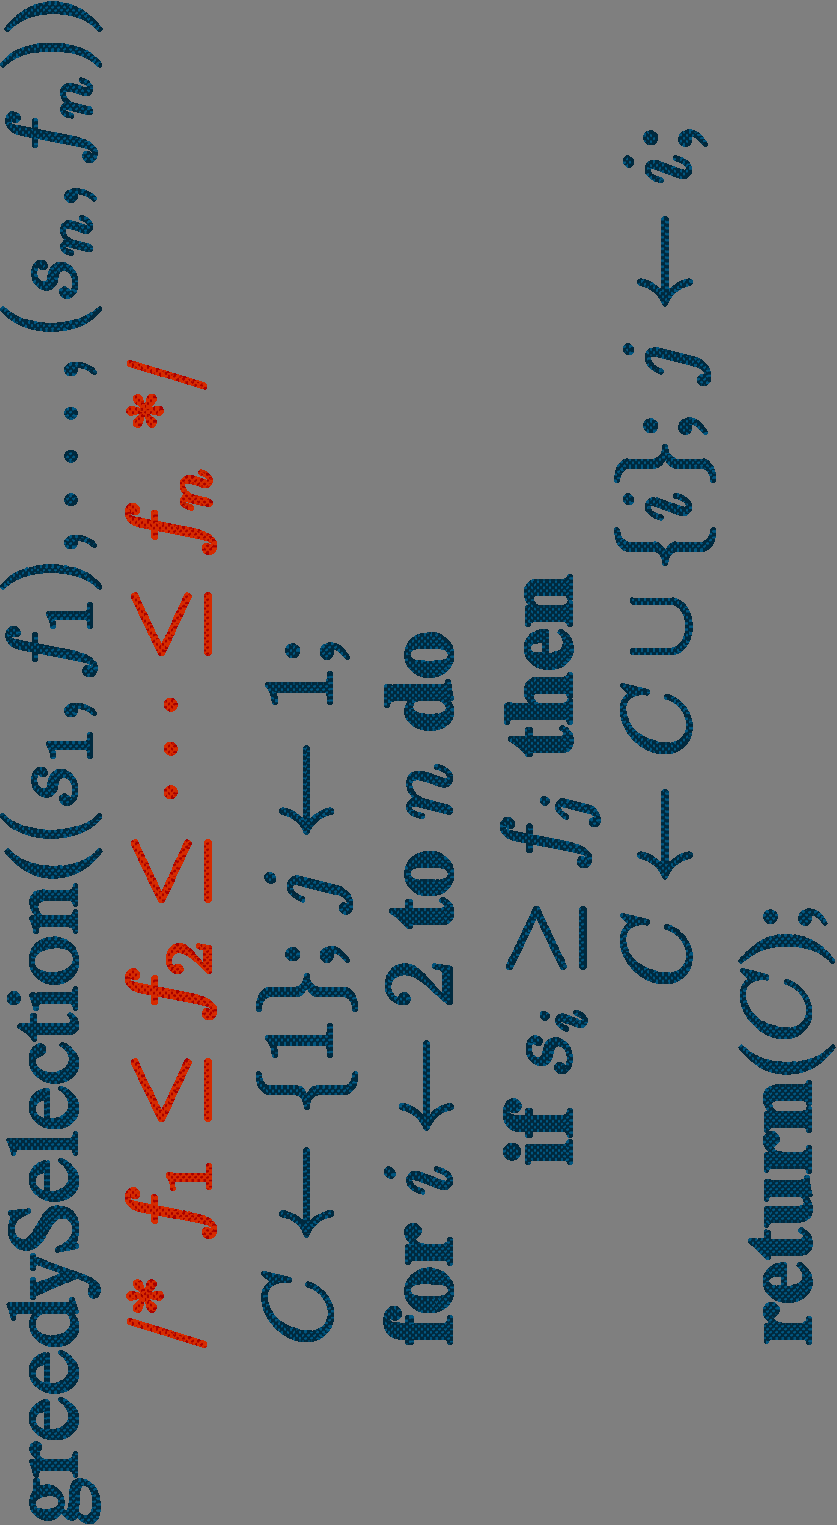 Υλοποίηση Χρόνος Ο(n log n) (ταξινόμηση ως προς χρόνο